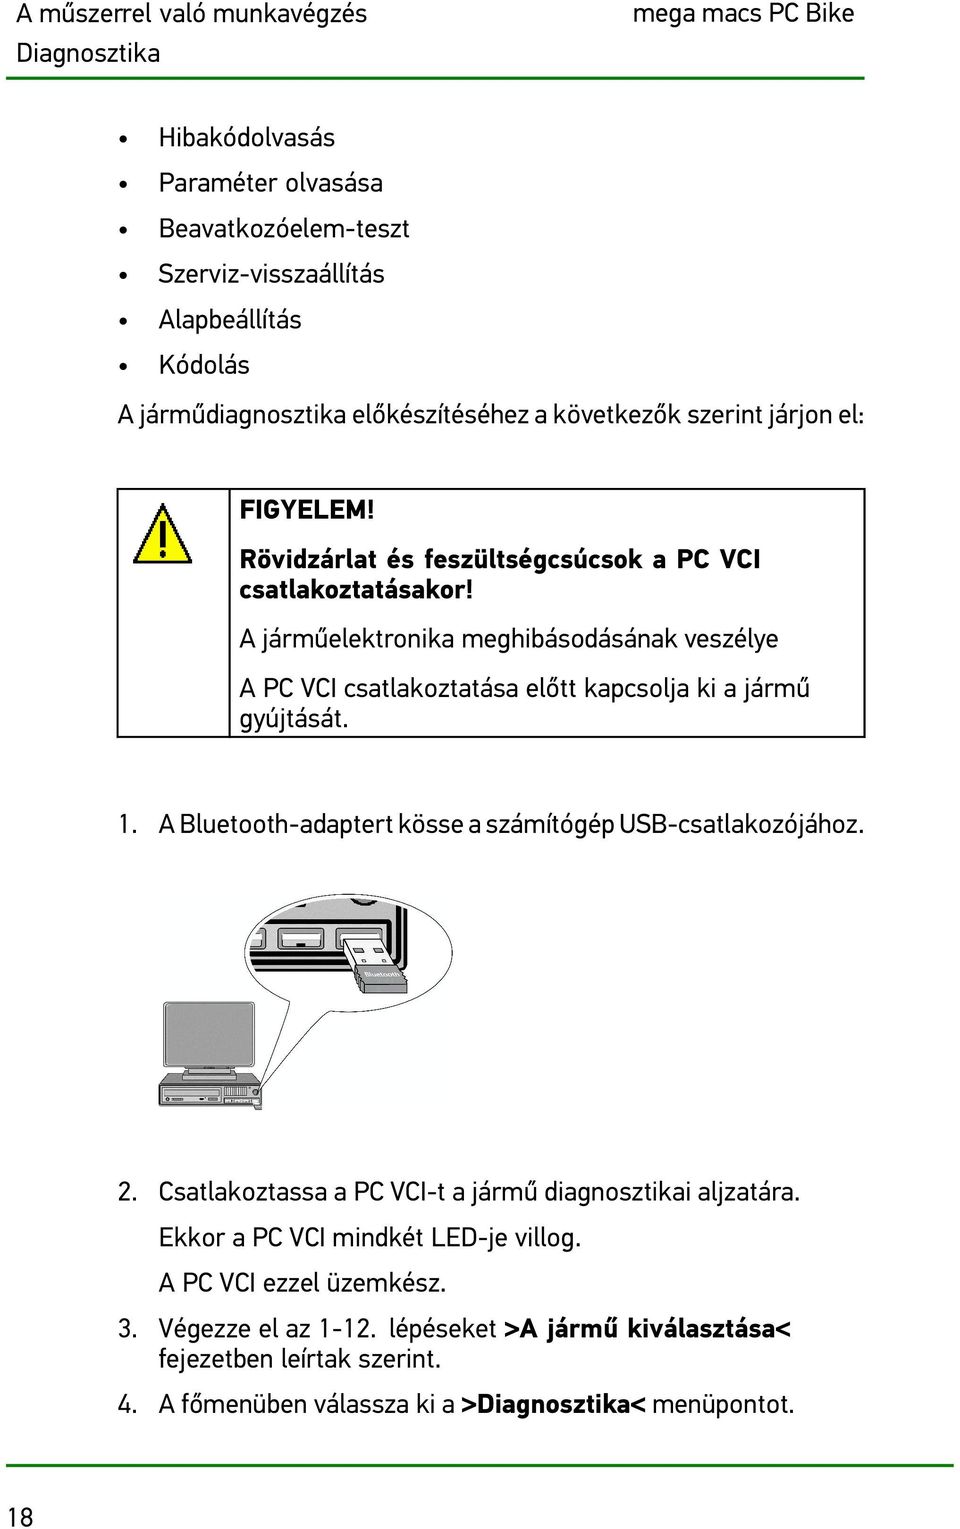 A járműelektronika meghibásodásának veszélye A PC VCI csatlakoztatása előtt kapcsolja ki a jármű gyújtását. 1. A Bluetooth-adaptert kösse a számítógép USB-csatlakozójához. 2.